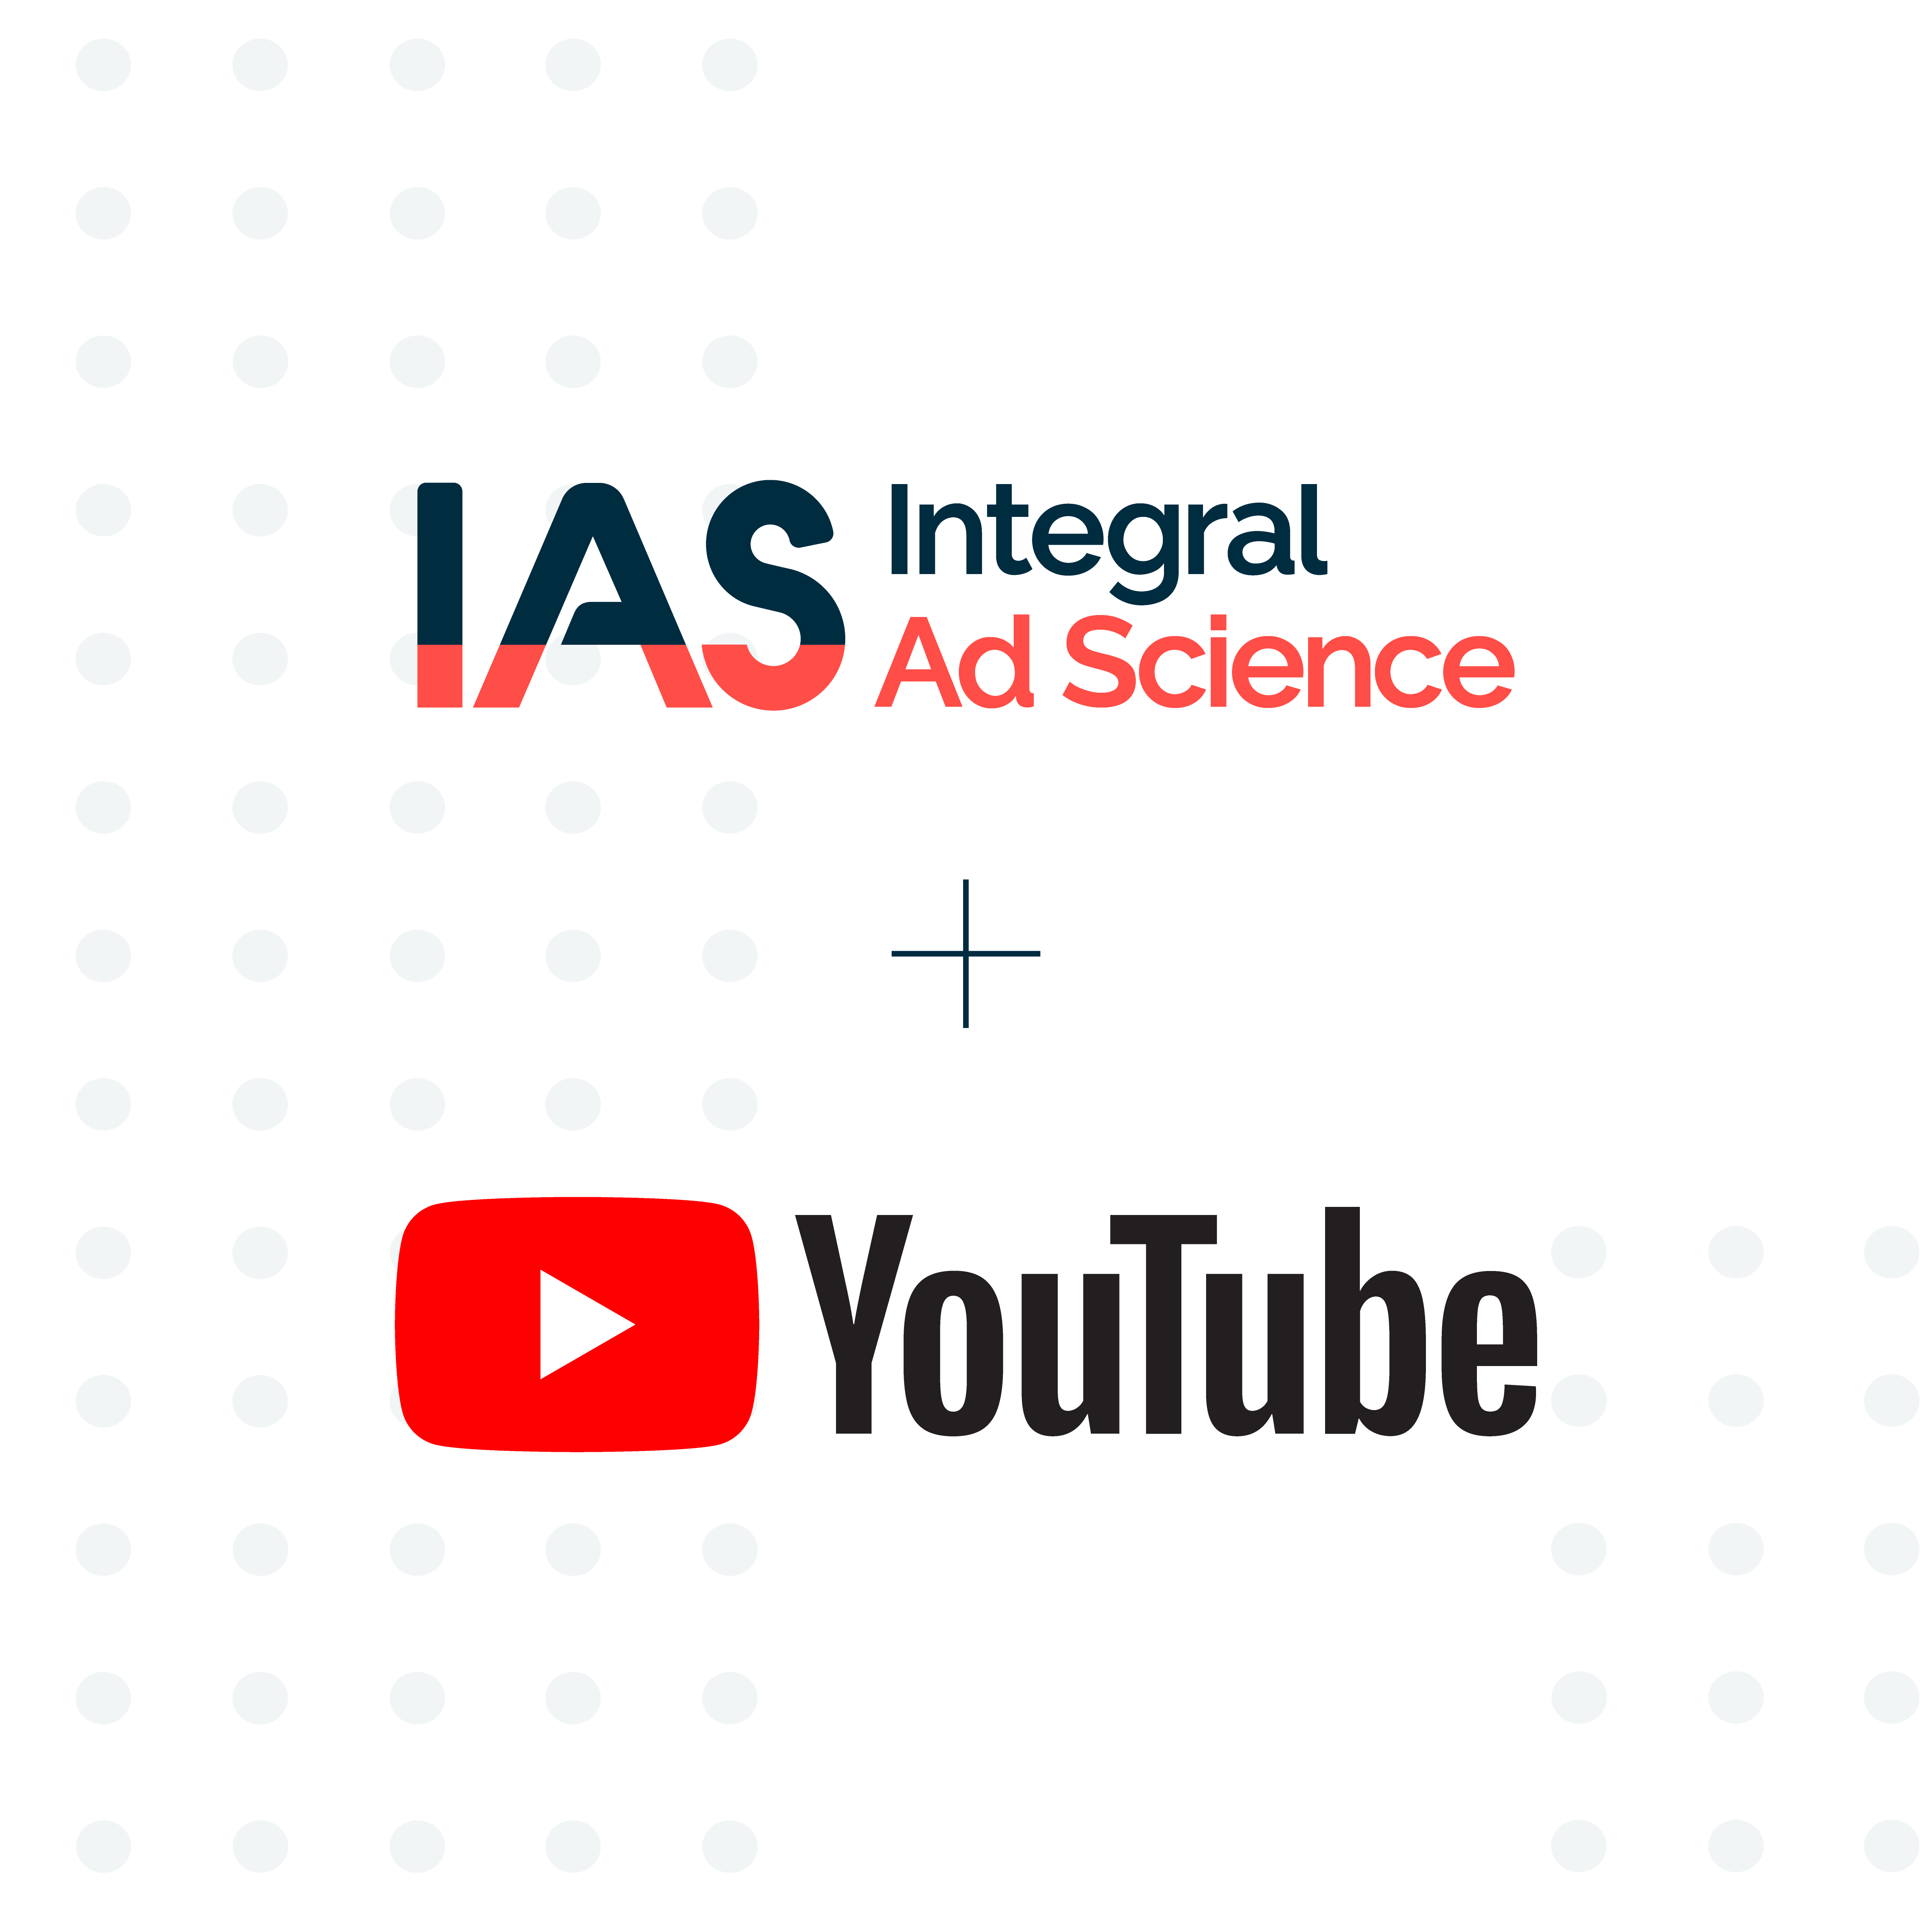 IAS erweitert YouTube-Angebot für effizientes Brand Safety und Suitability Measurement